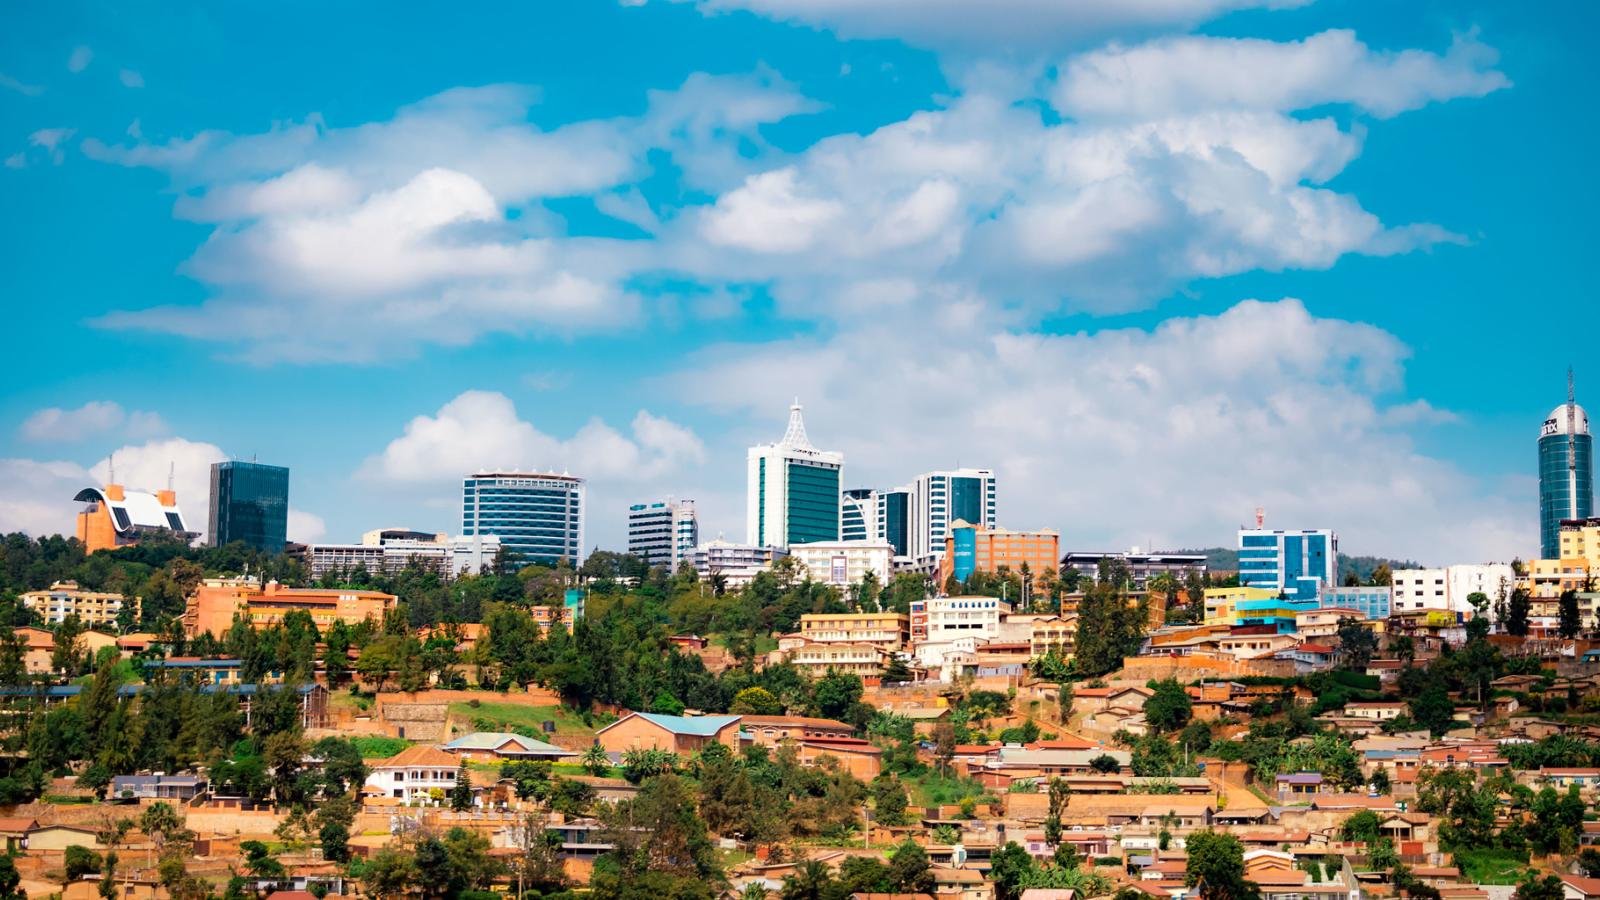 Rwanda Banner Image 4